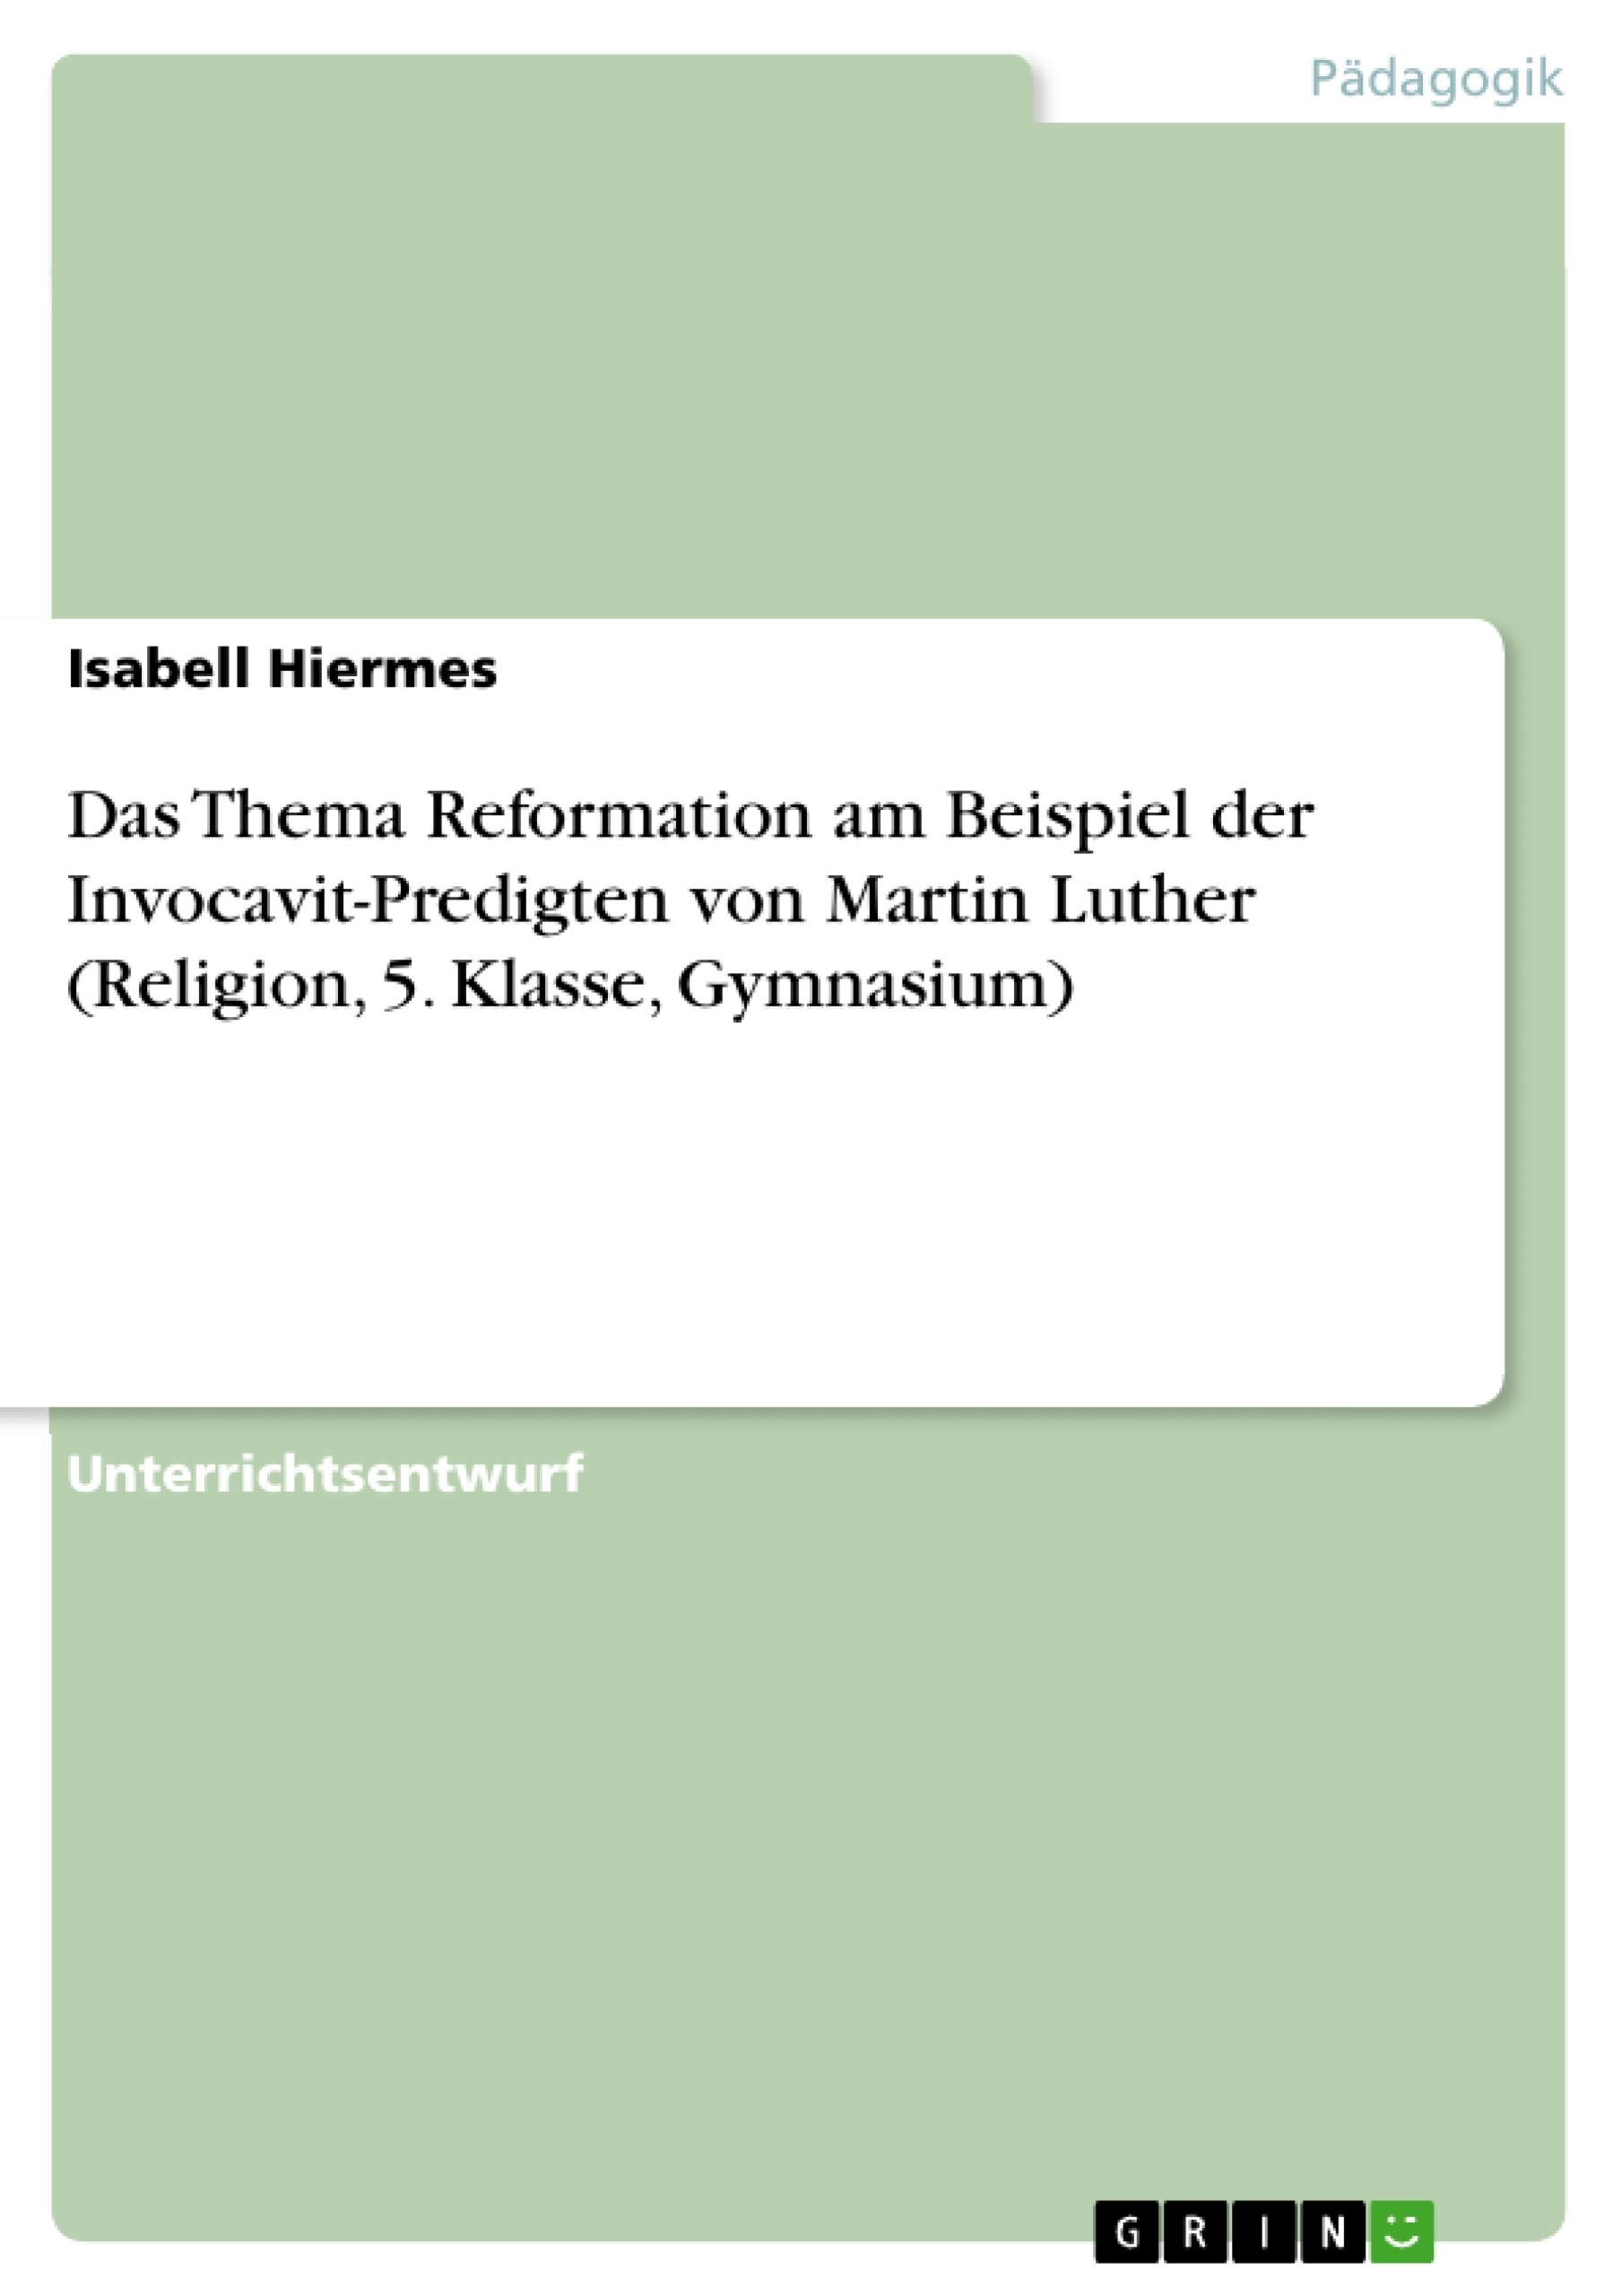 Title: Das Thema Reformation am Beispiel der Invocavit-Predigten von Martin Luther (Religion, 5. Klasse, Gymnasium)